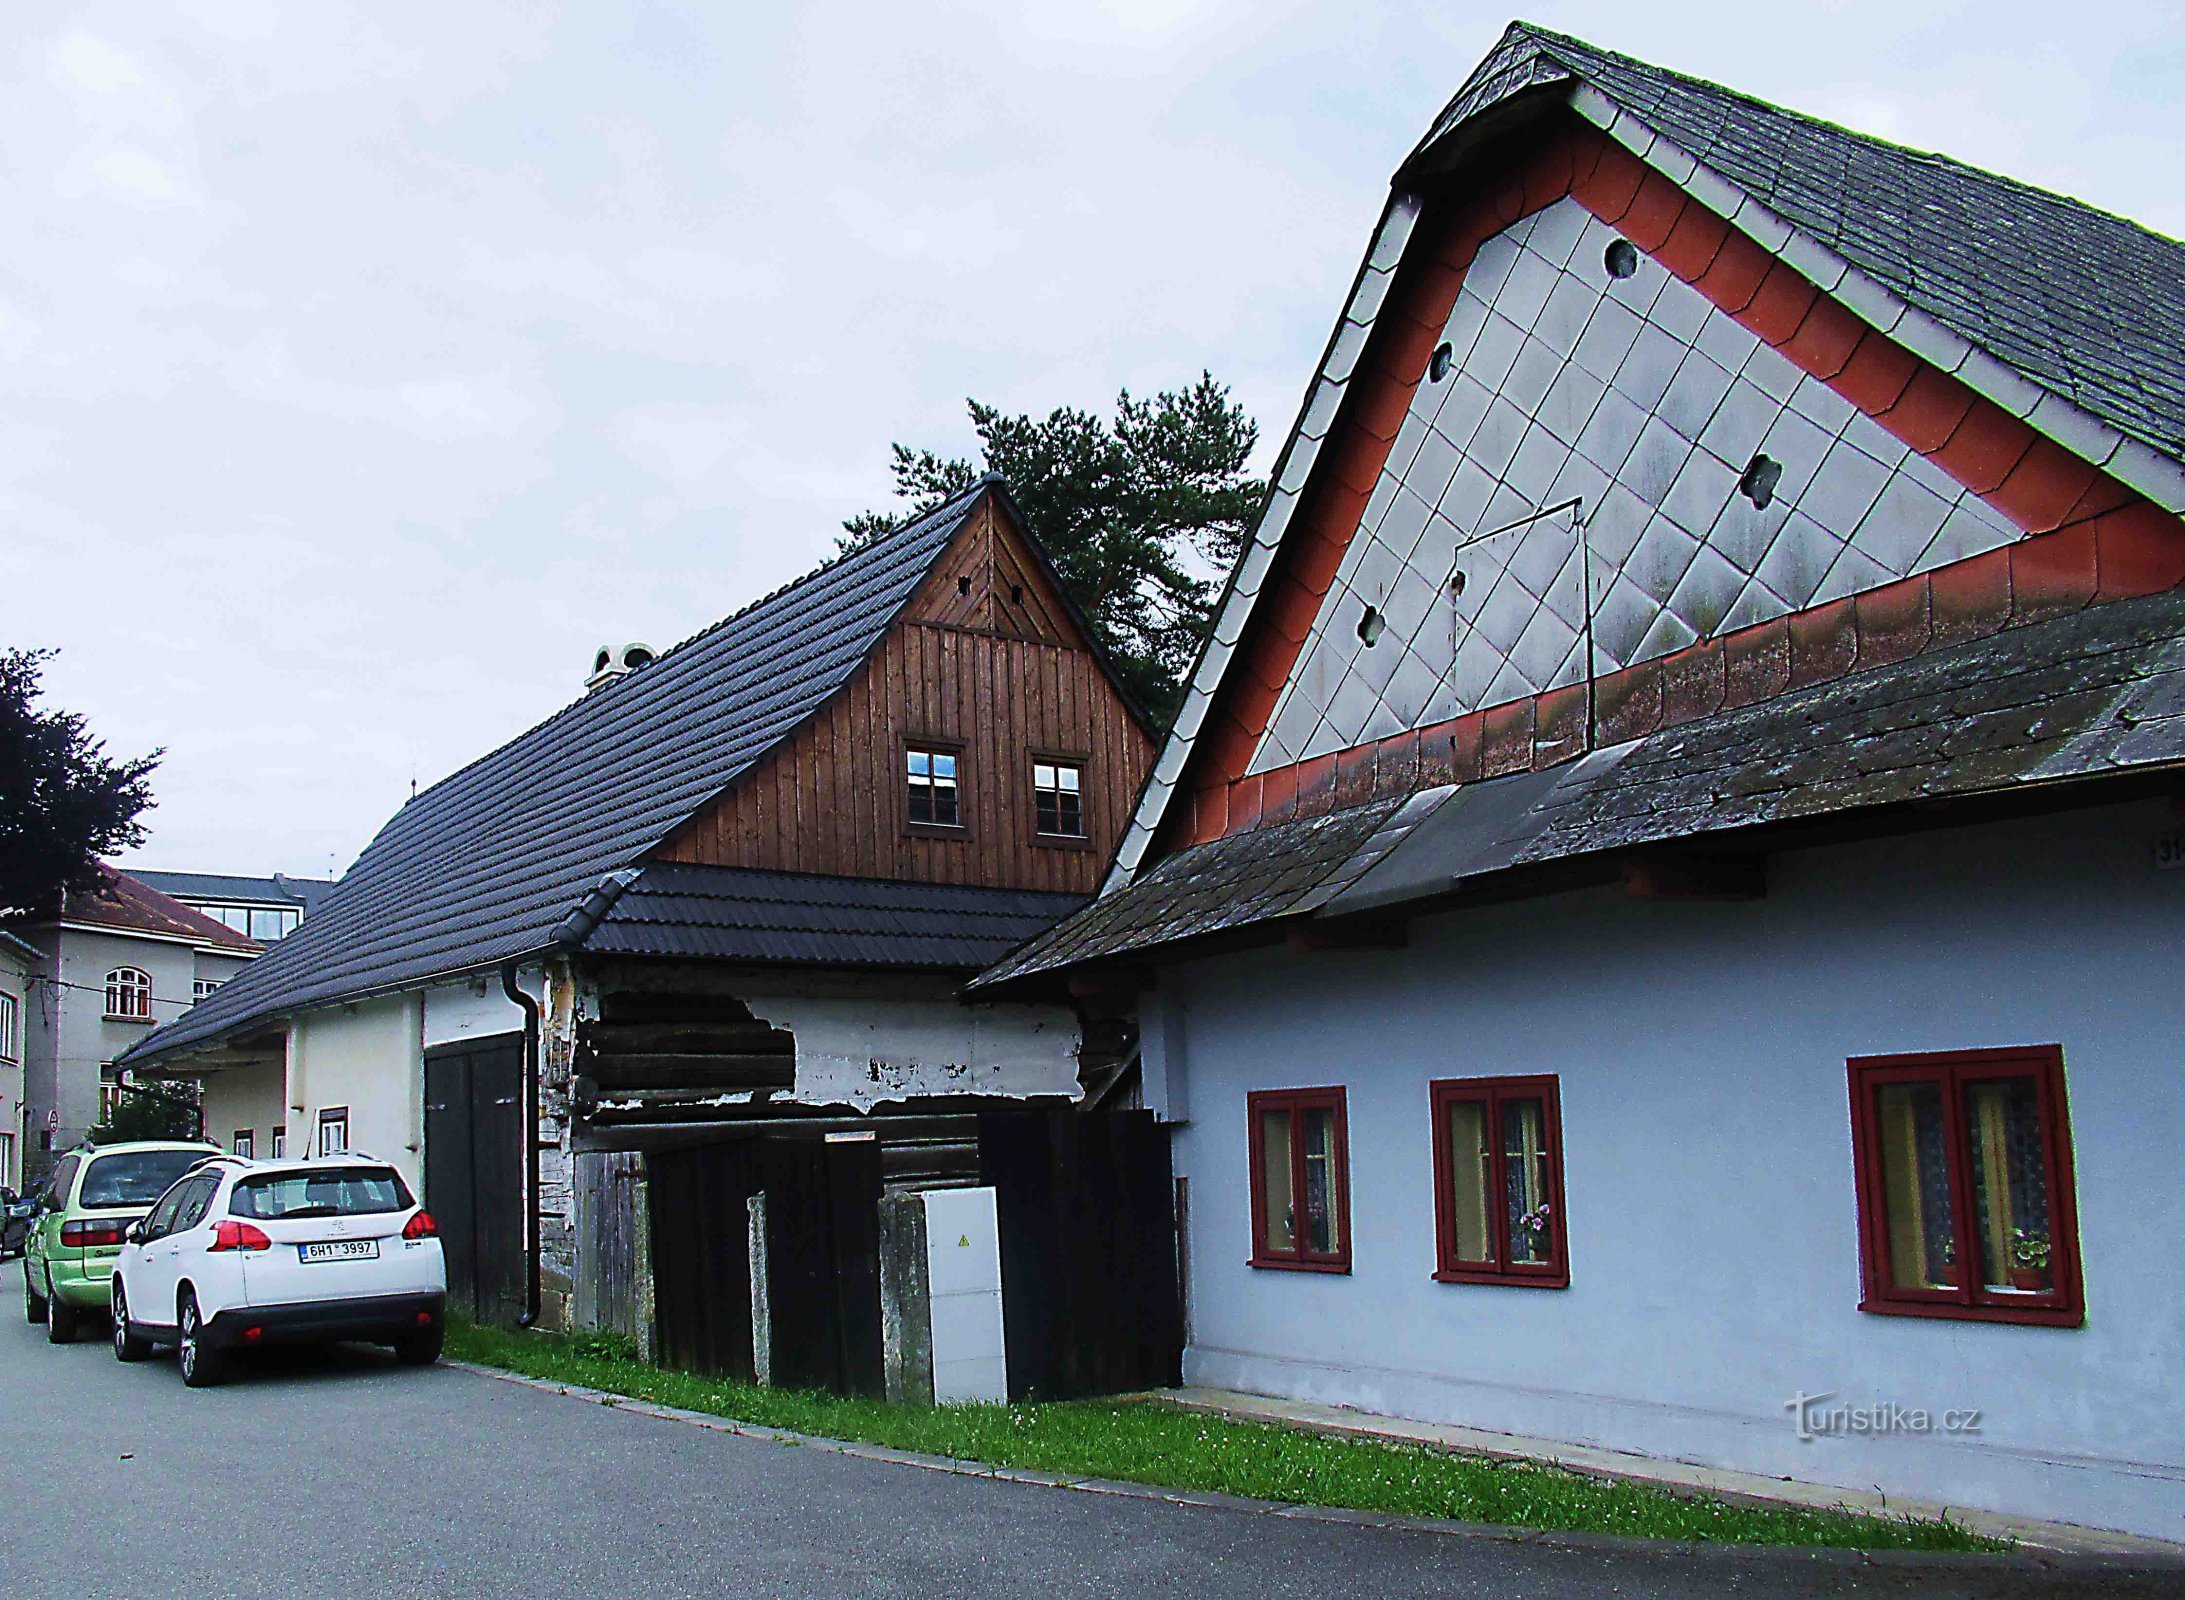 Σπίτια υφαντών - λαϊκά κτίρια από τον 19ο αιώνα στο Ústí nad Orlicí